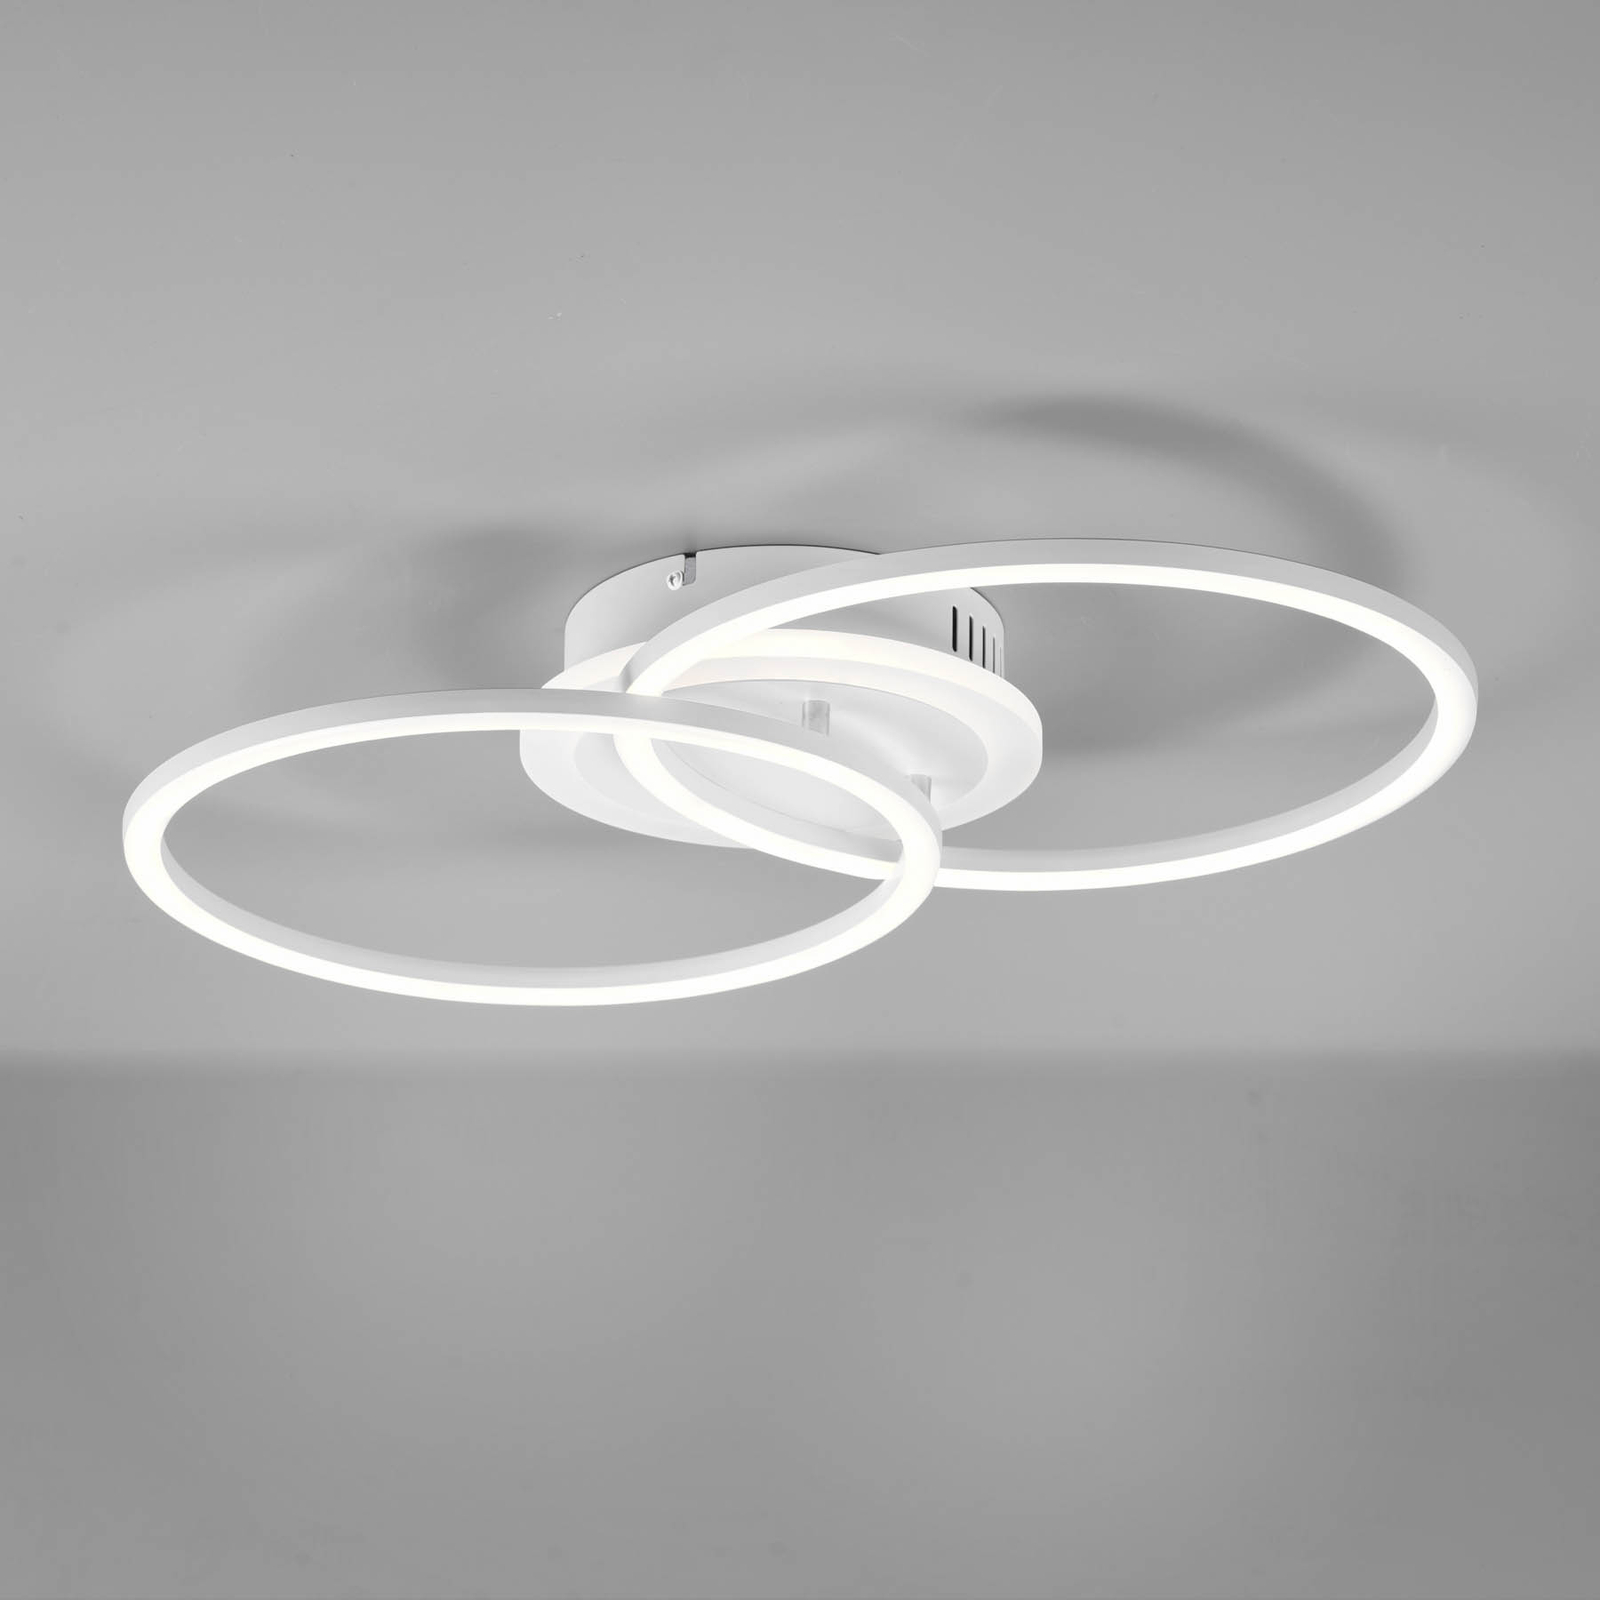 LED-Deckenleuchte Venida im Ringdesign, weiß